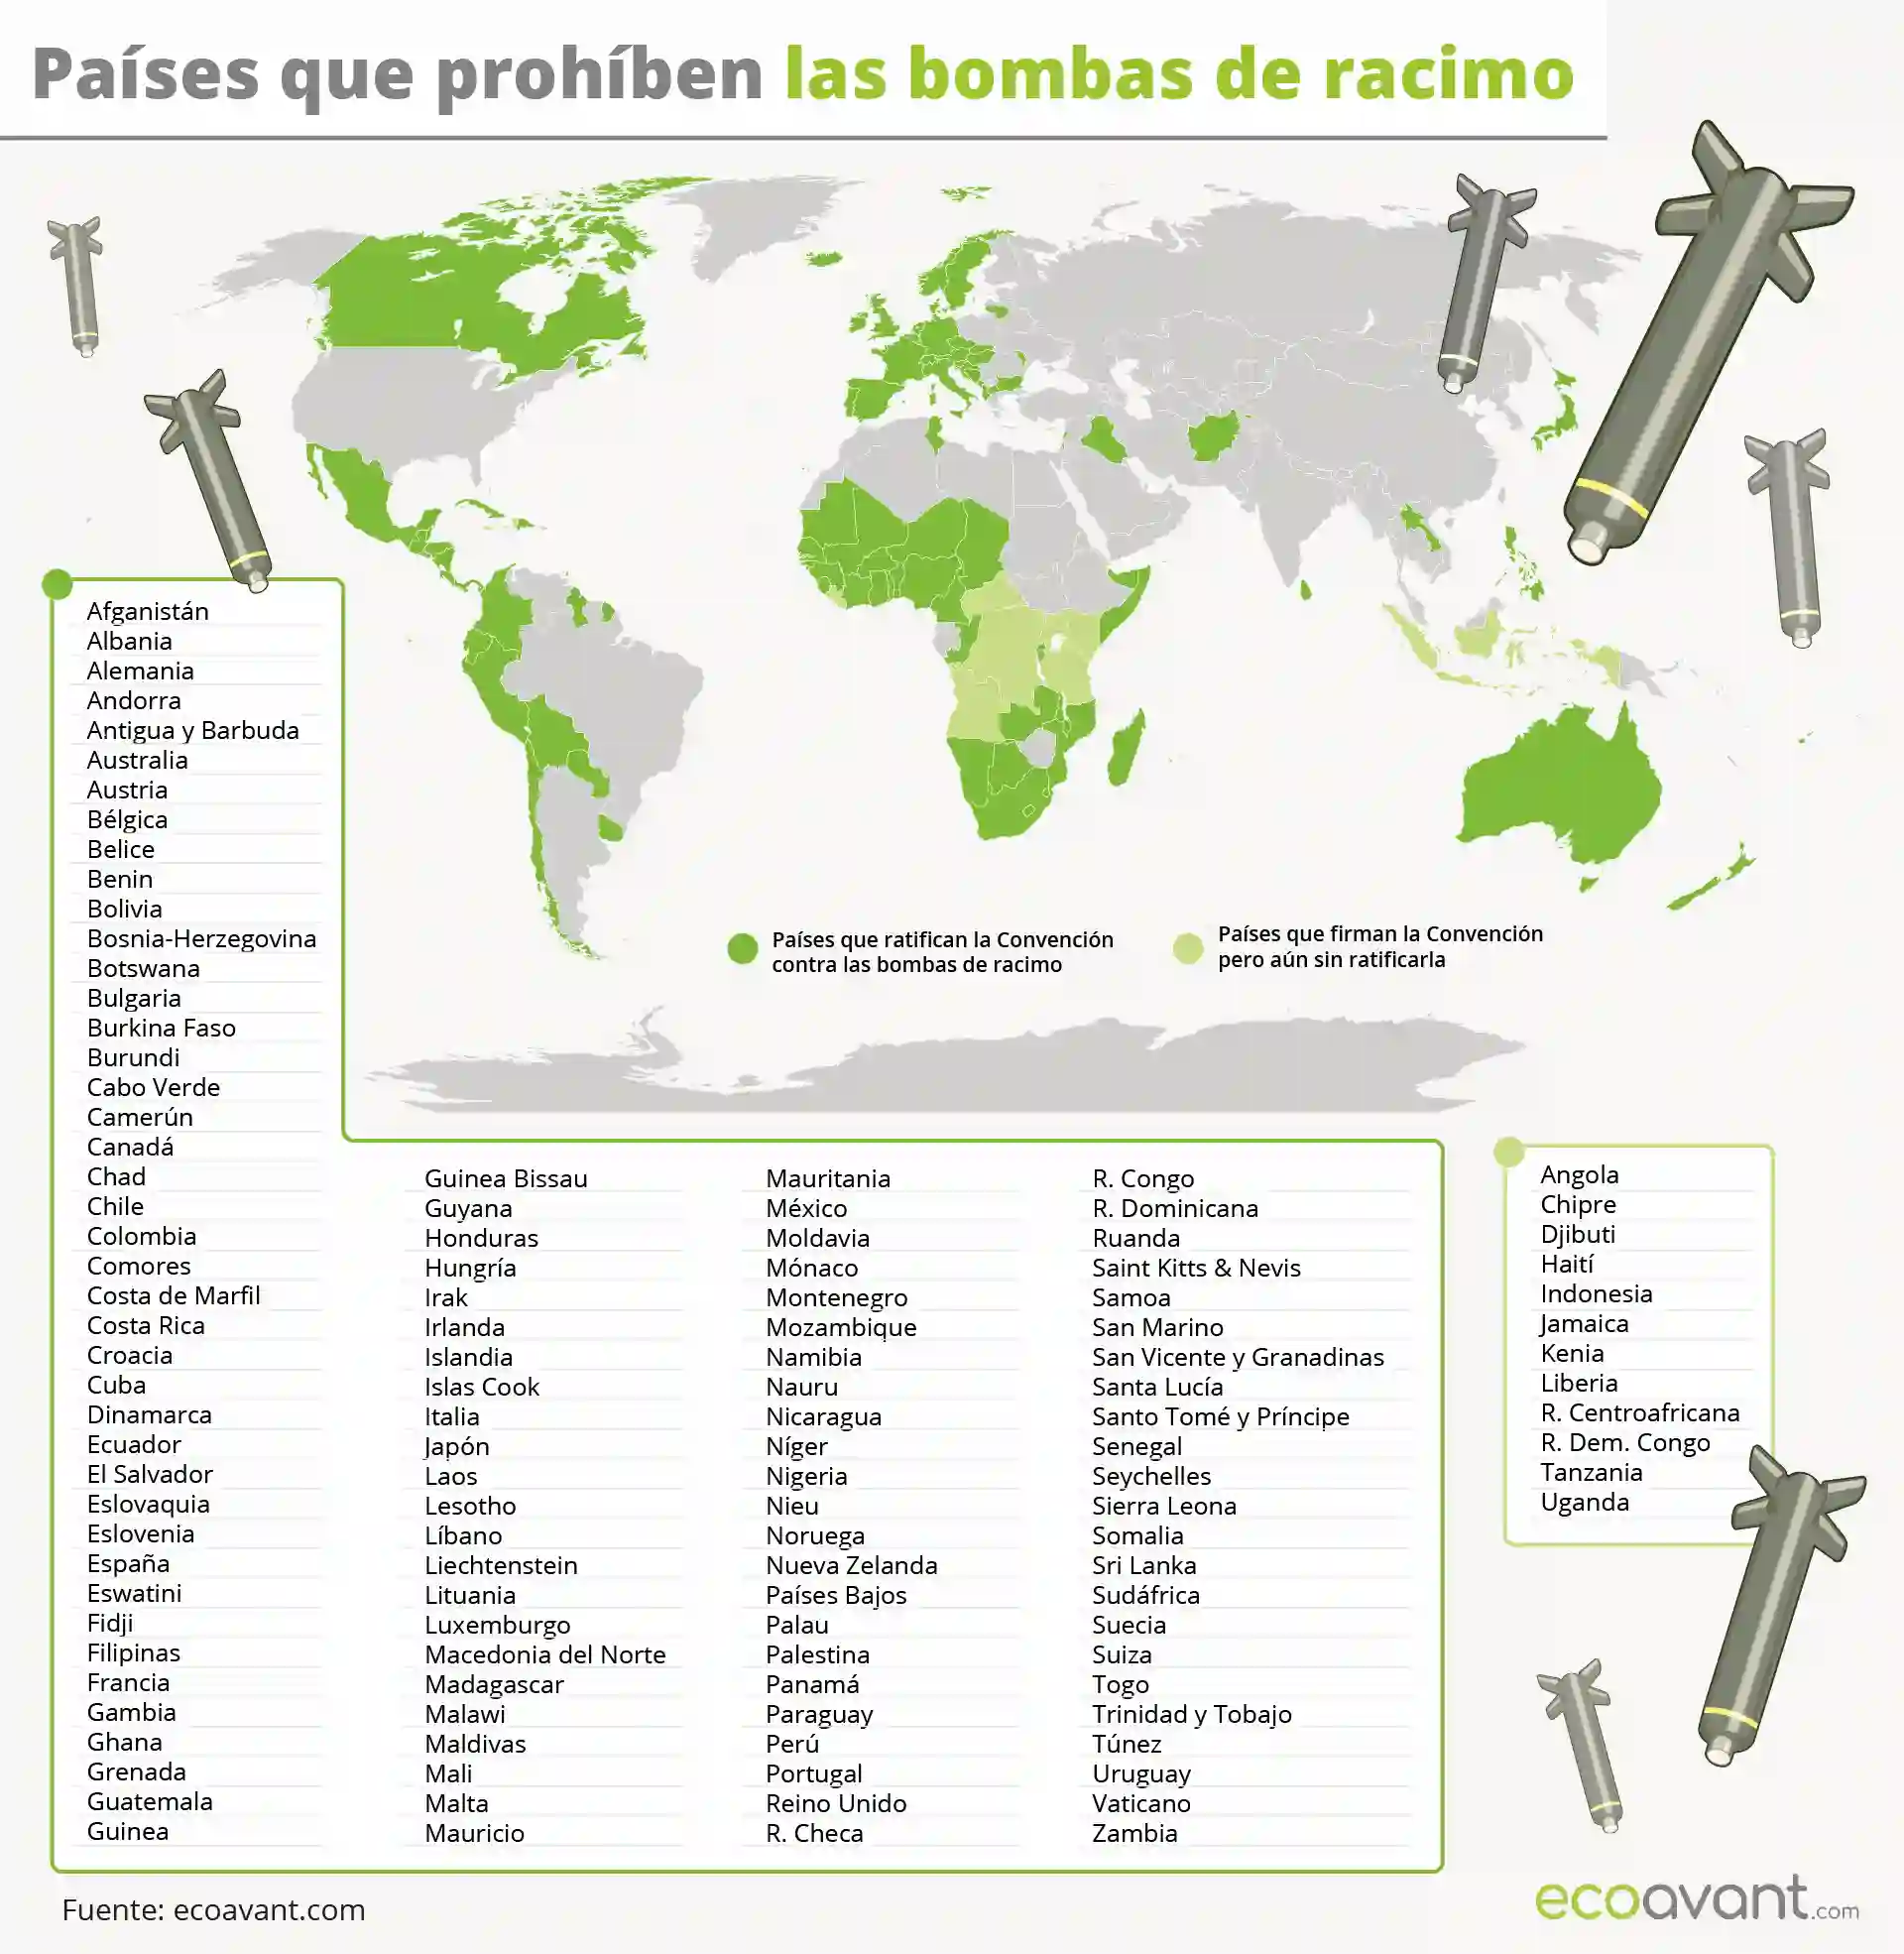 Mapa de los países que prohíben las bombas de racimo / Mapa: EcoAvant.com